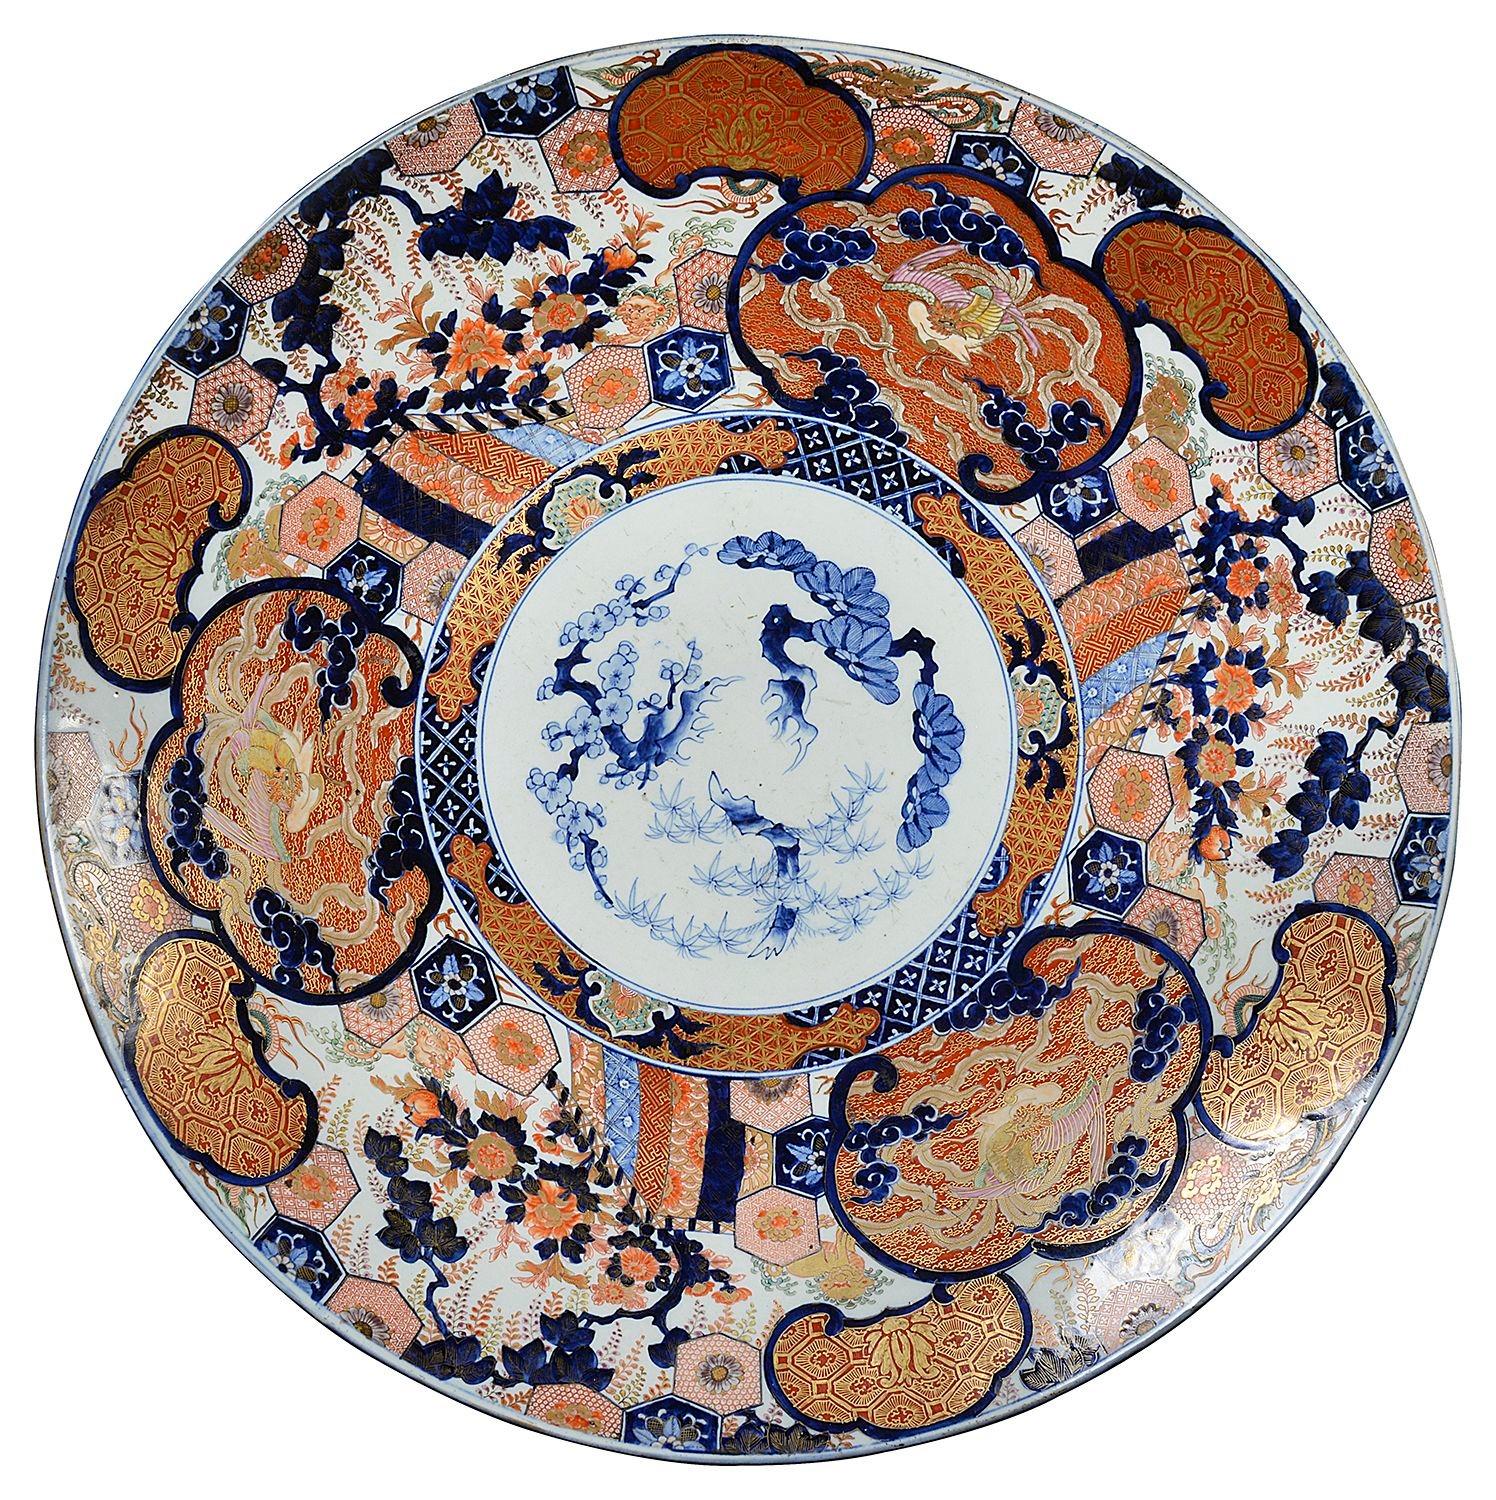 Grand chargeur japonais Imari du XIXe siècle, avec de magnifiques dorures et des couleurs vives, représentant des motifs classiques peints à la main, des arbres en fleurs, des fleurs exotiques et des oiseaux.
Y compris un support de plaque en